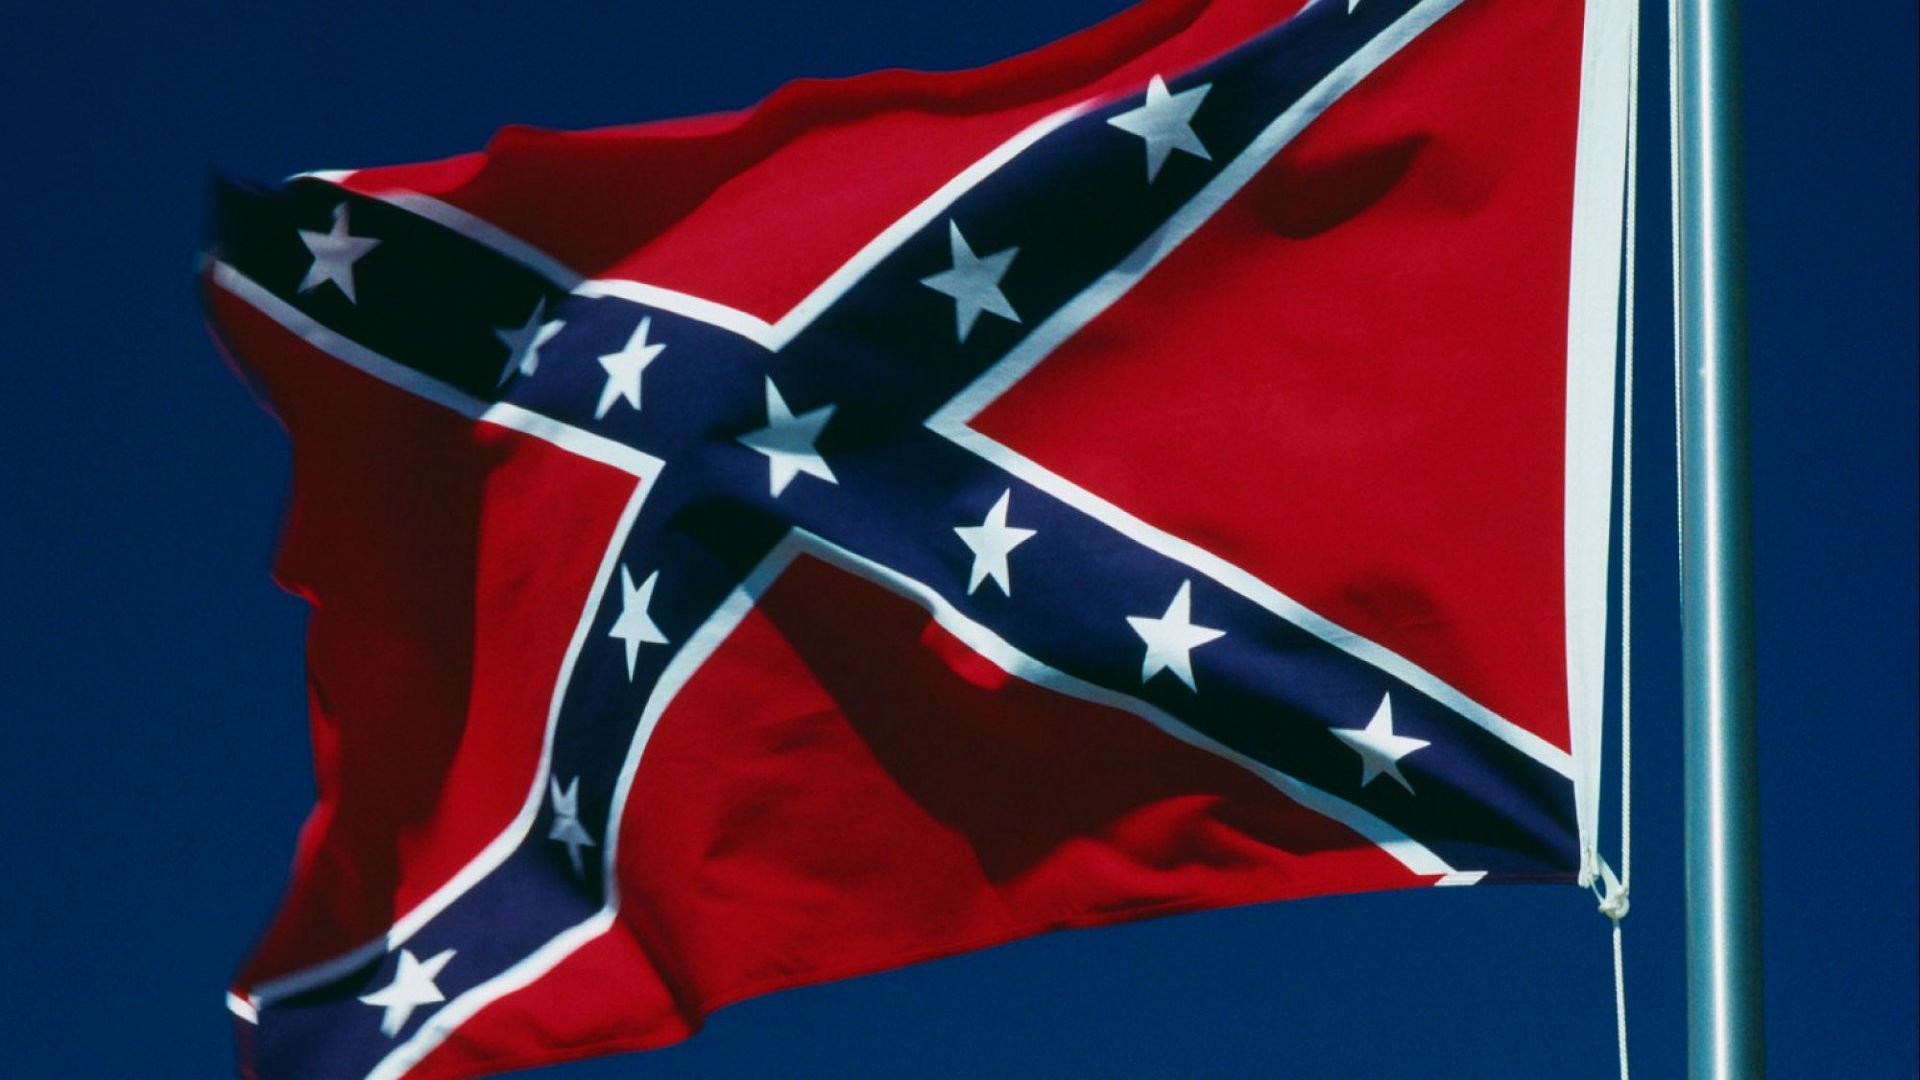 Wallpaper wallpapersafari confederate flag usa america united states csa civil war rebel